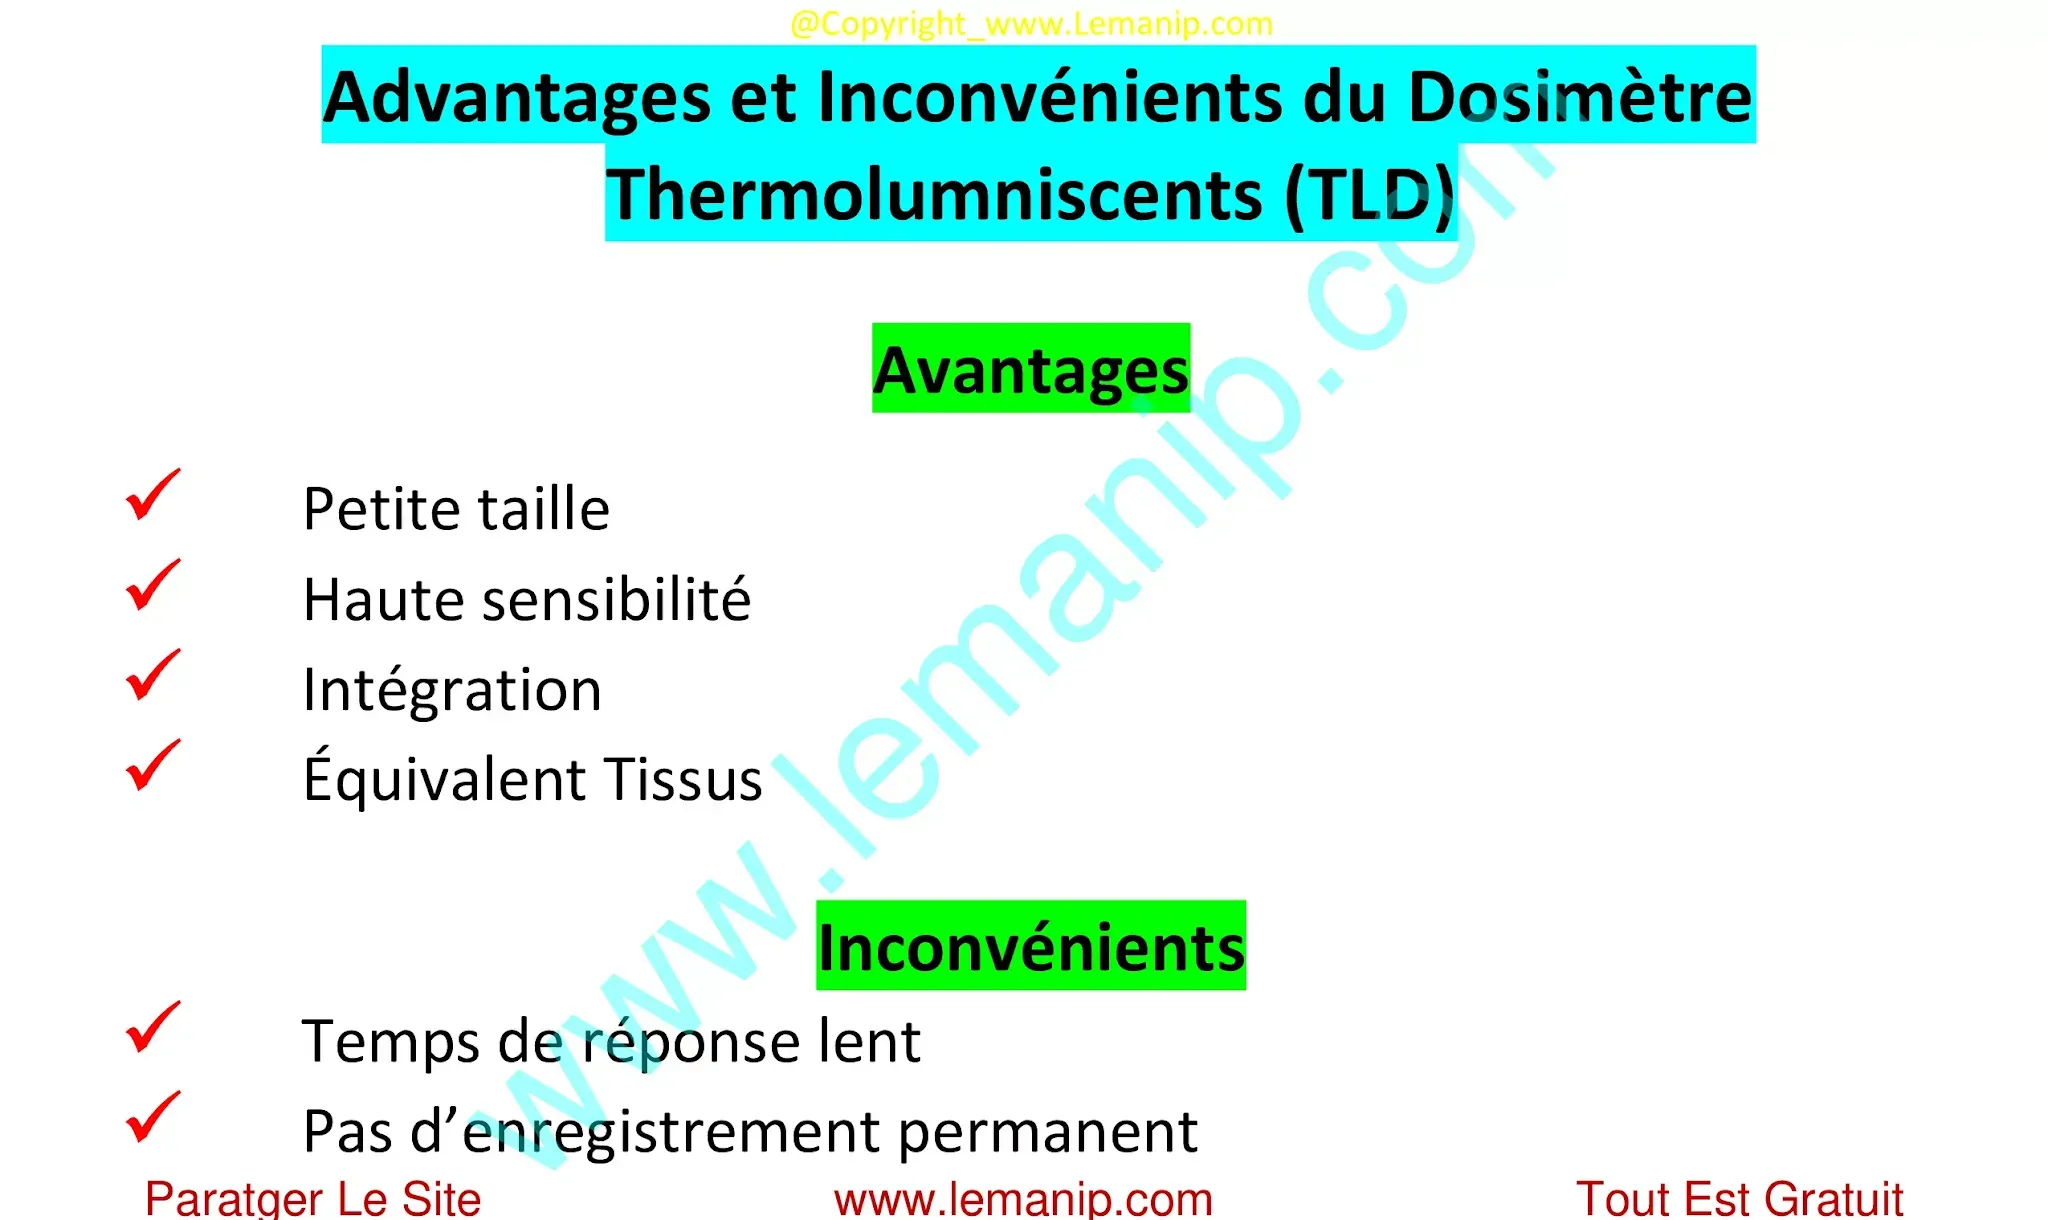 Advantages et Inconvénients du Dosimètre Thermolumniscents (TLD)